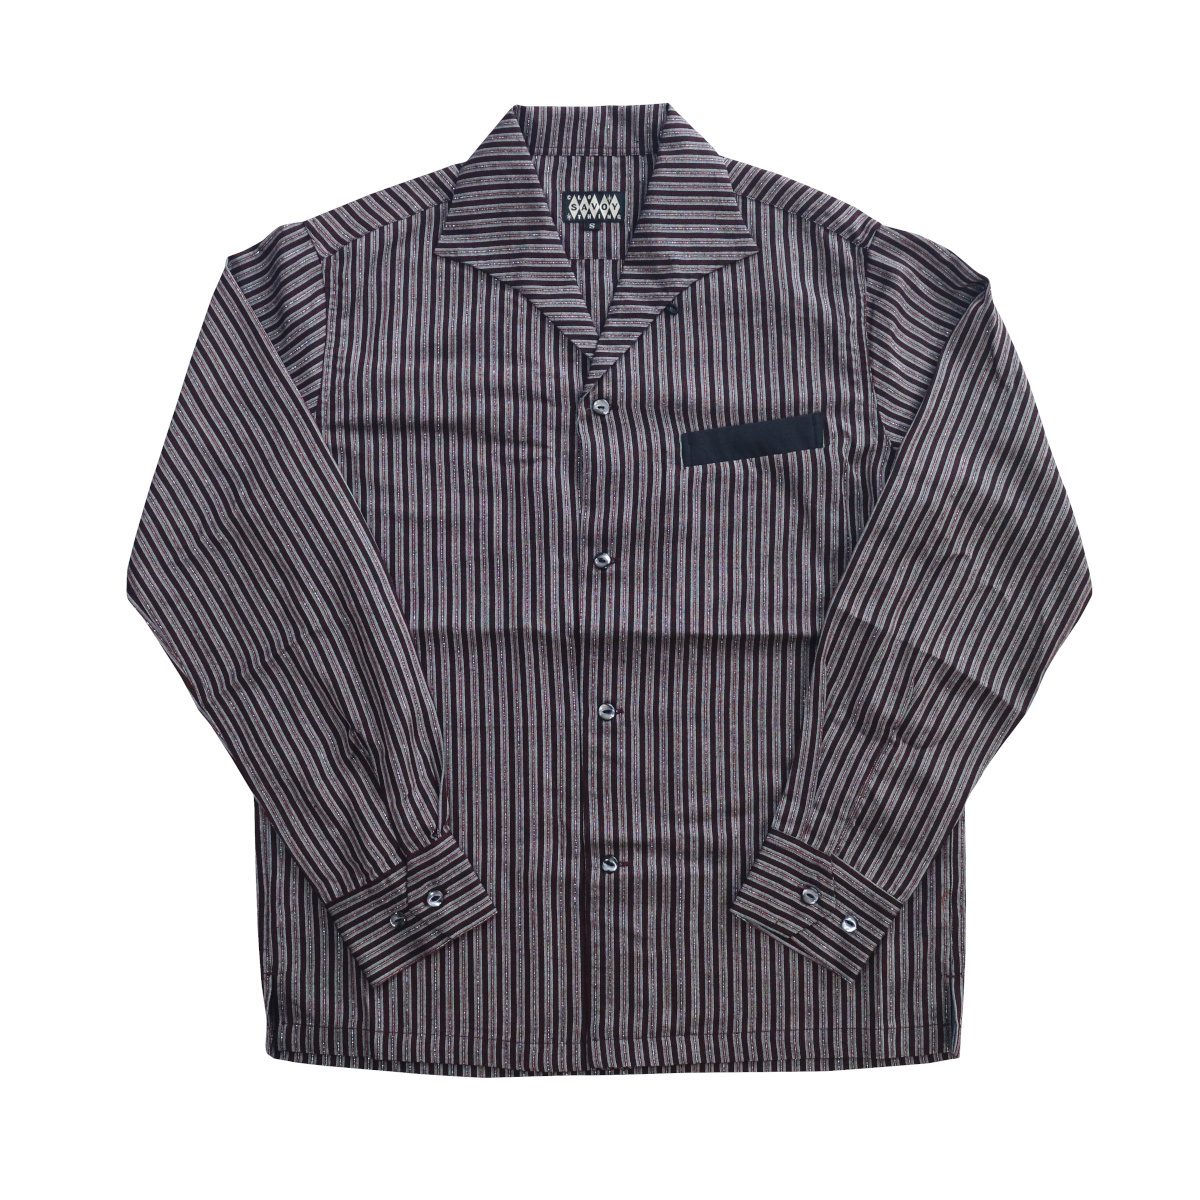 シャツ 長袖 メンズ ロカビリーファッション Lame Stripe Italian Shirts サイズXL ブランド SAVOY CLOTHING_画像2